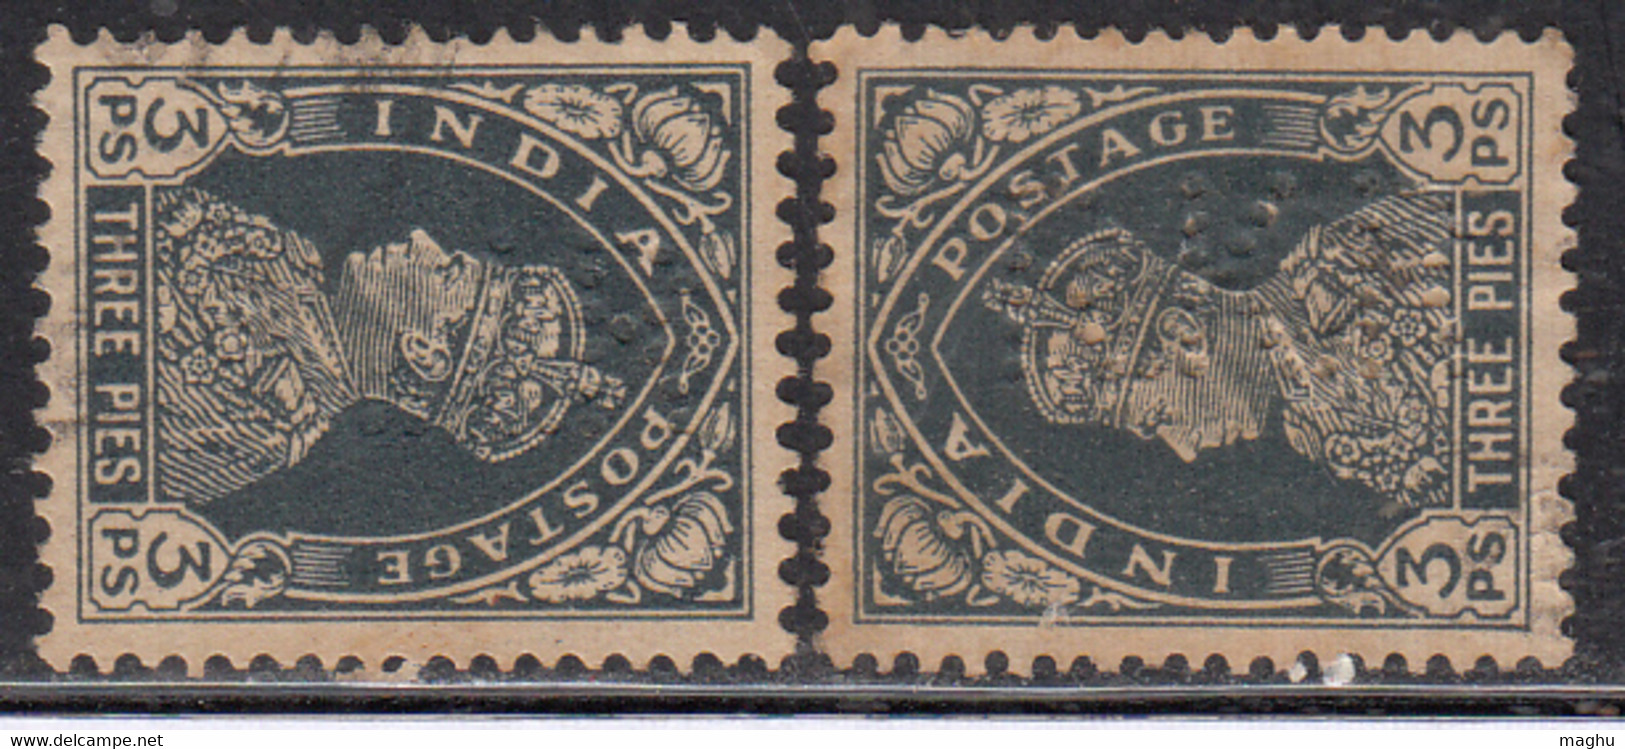 2 Perfin, Perfins, British India 1937 Used - Perforiert/Gezähnt